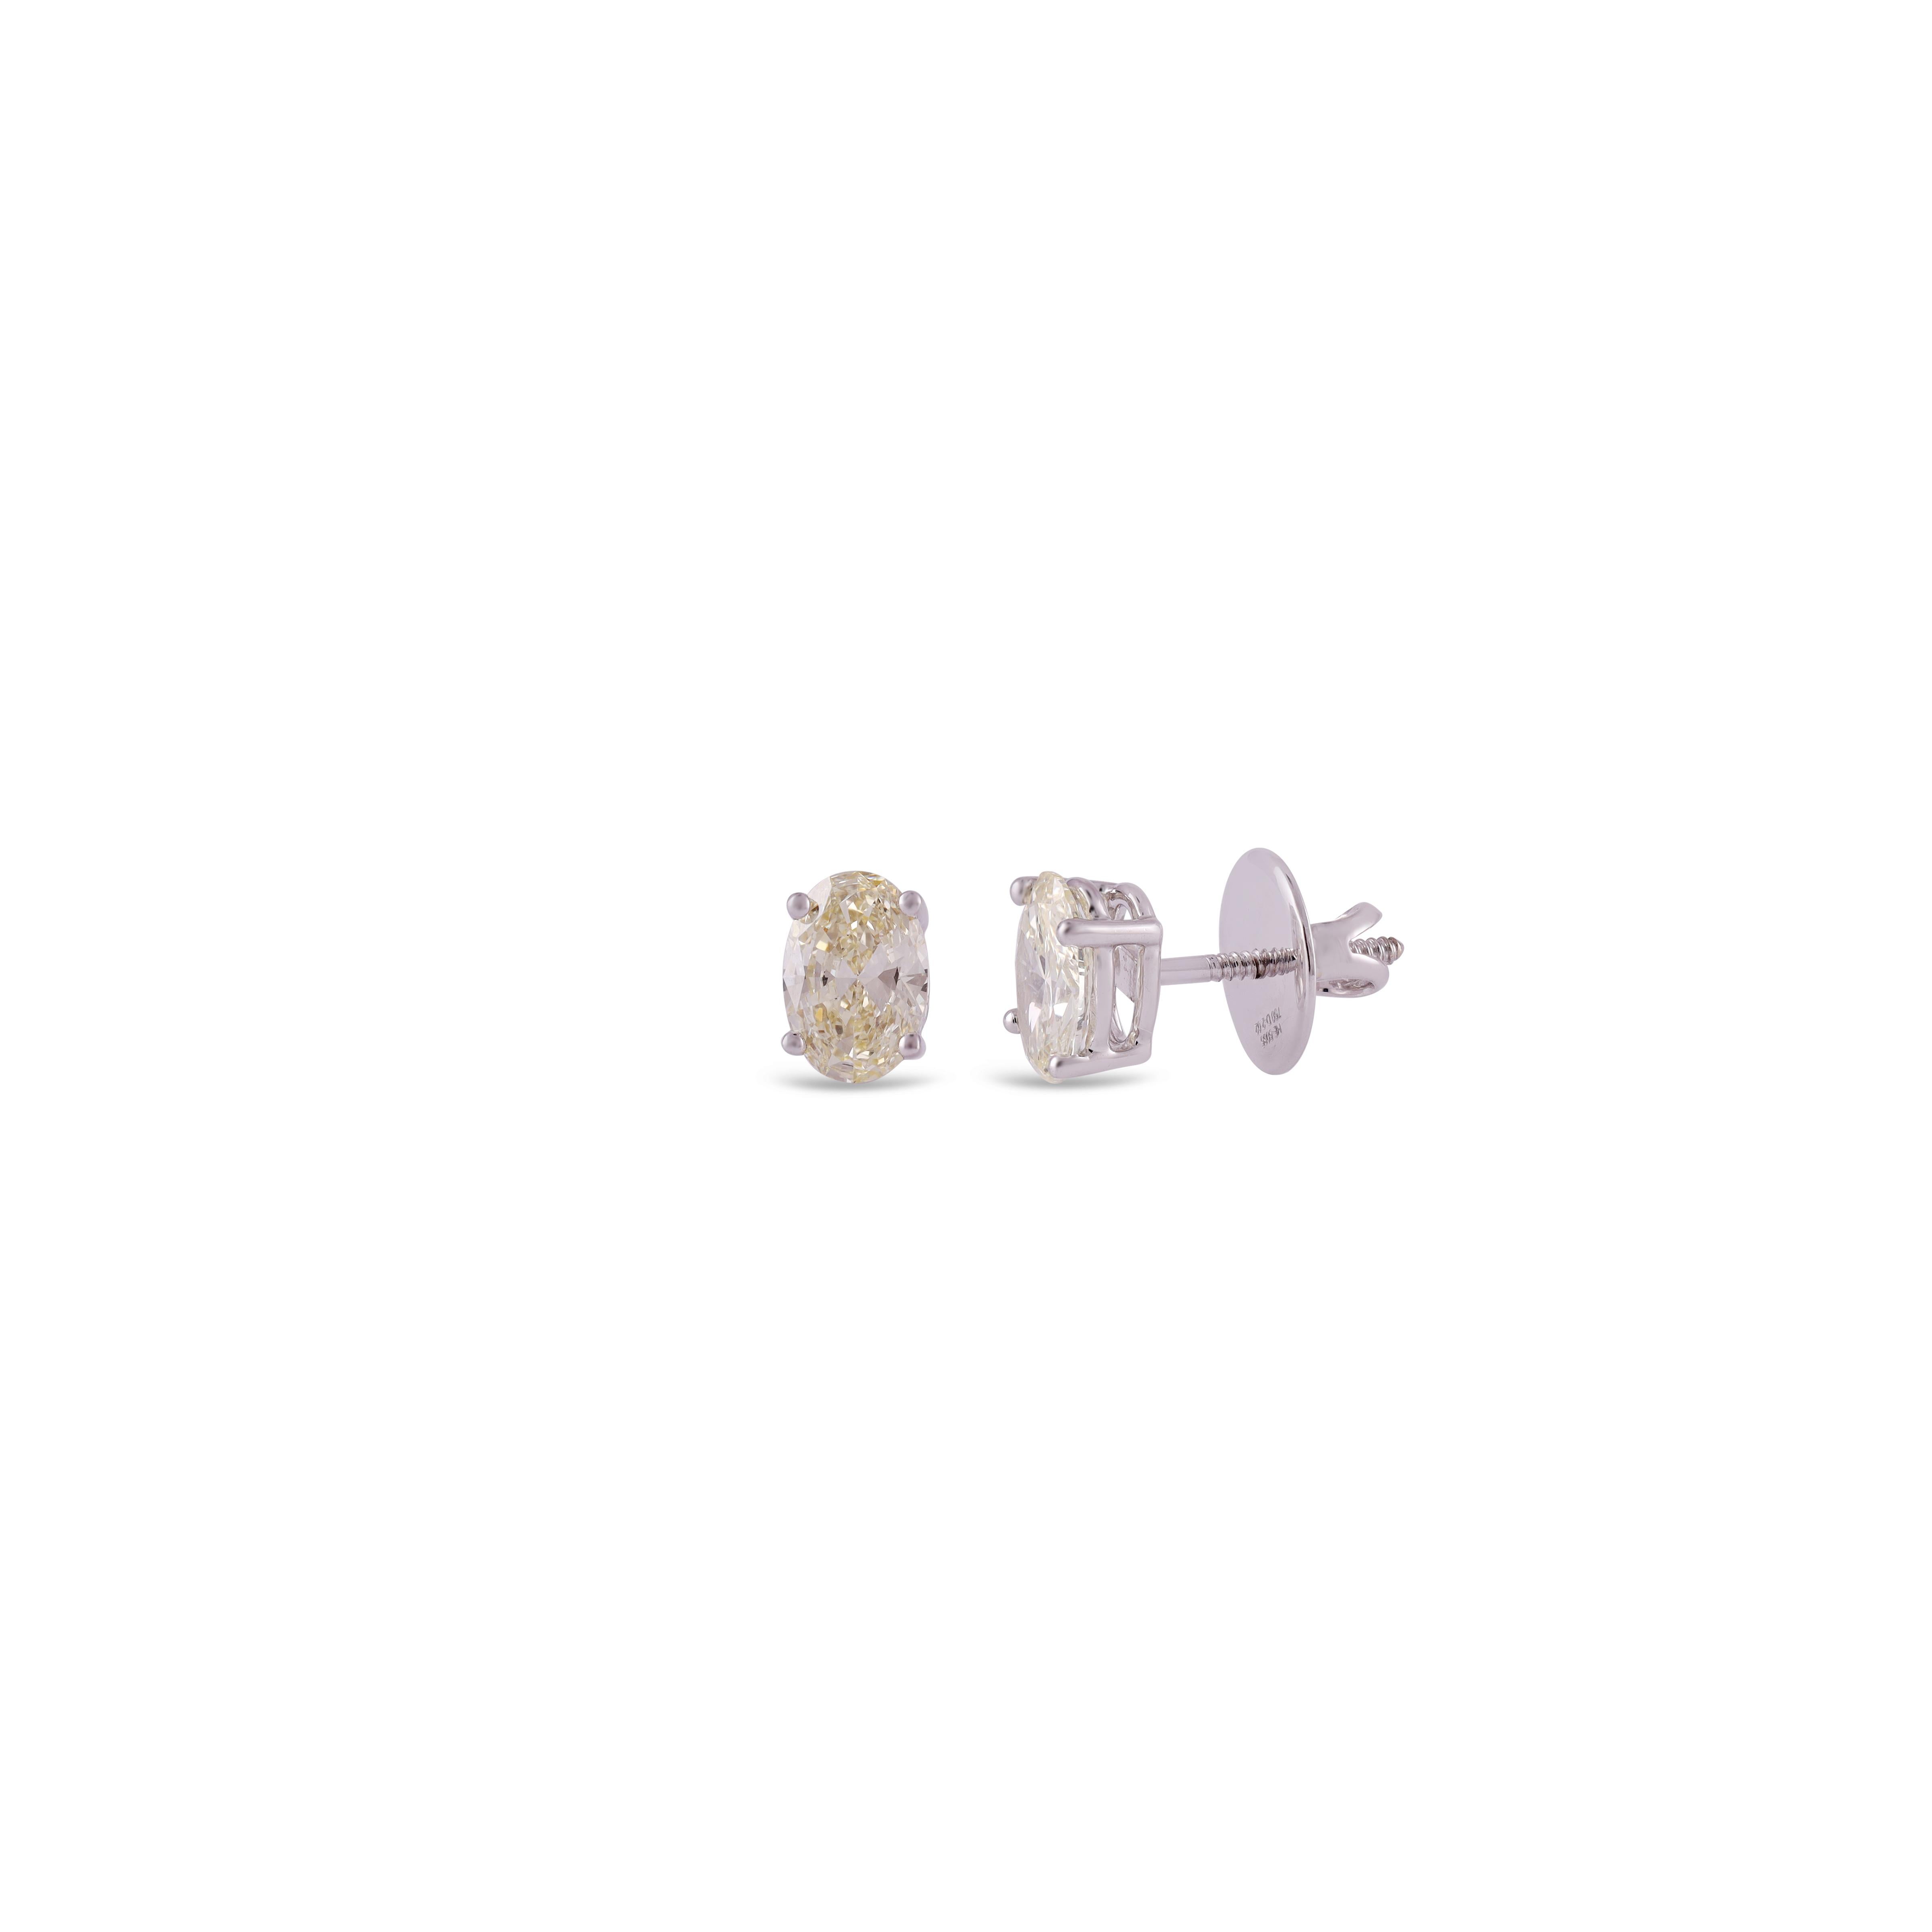 Fancy Solitaire Diamond - 2.02 Carat (2pcs)

18Kt White Gold